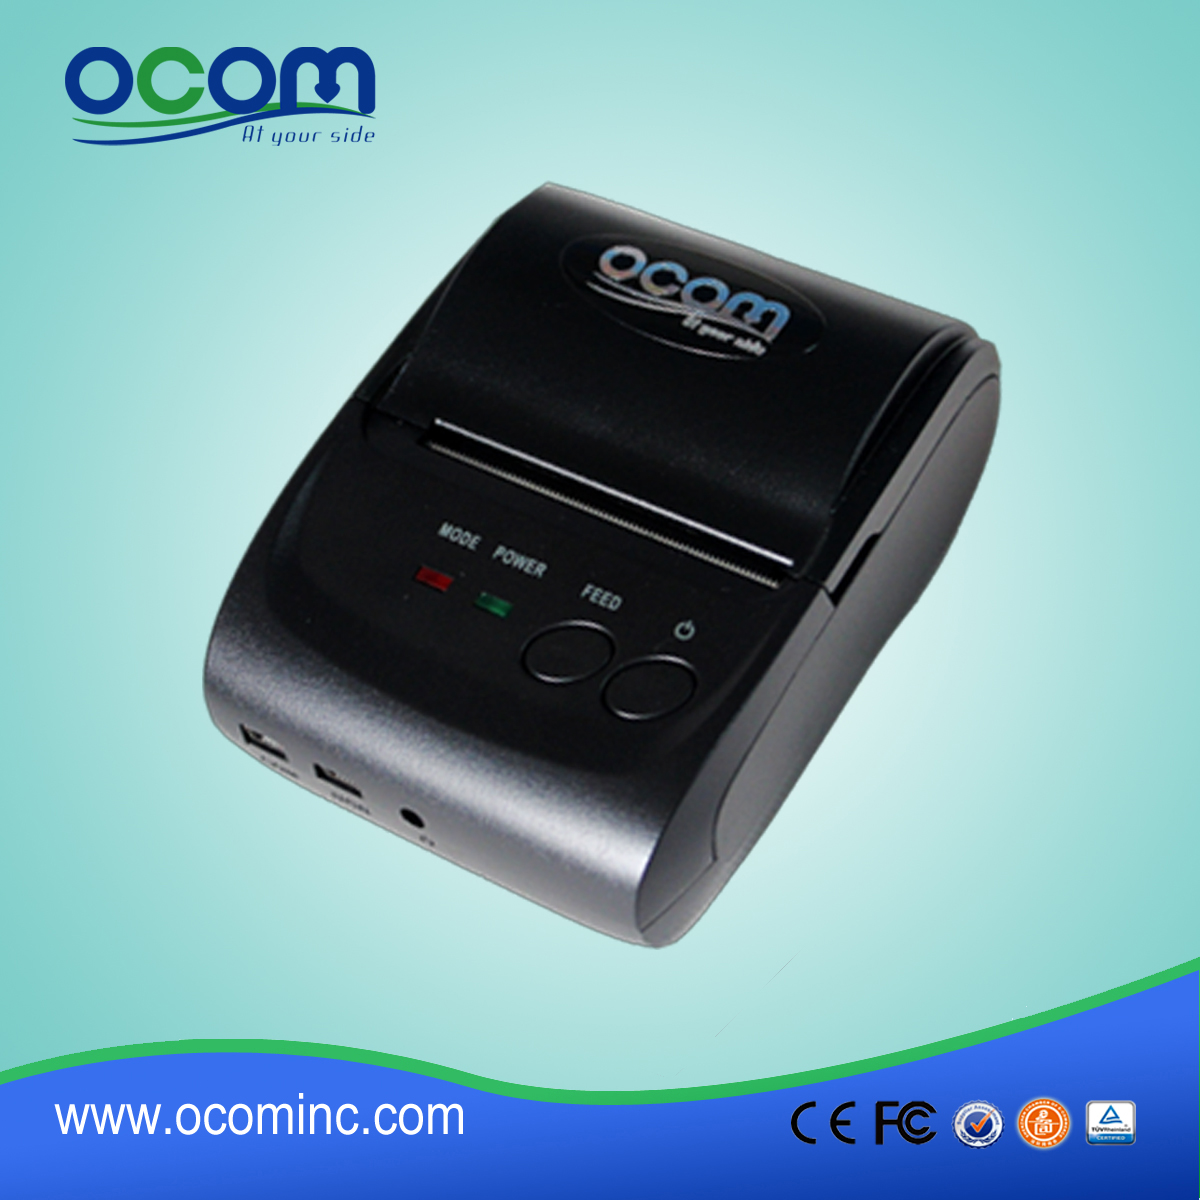 OCPP-M05: Kierowca termiczna wysokiej jakości drukarki pos, drukarki termicznej